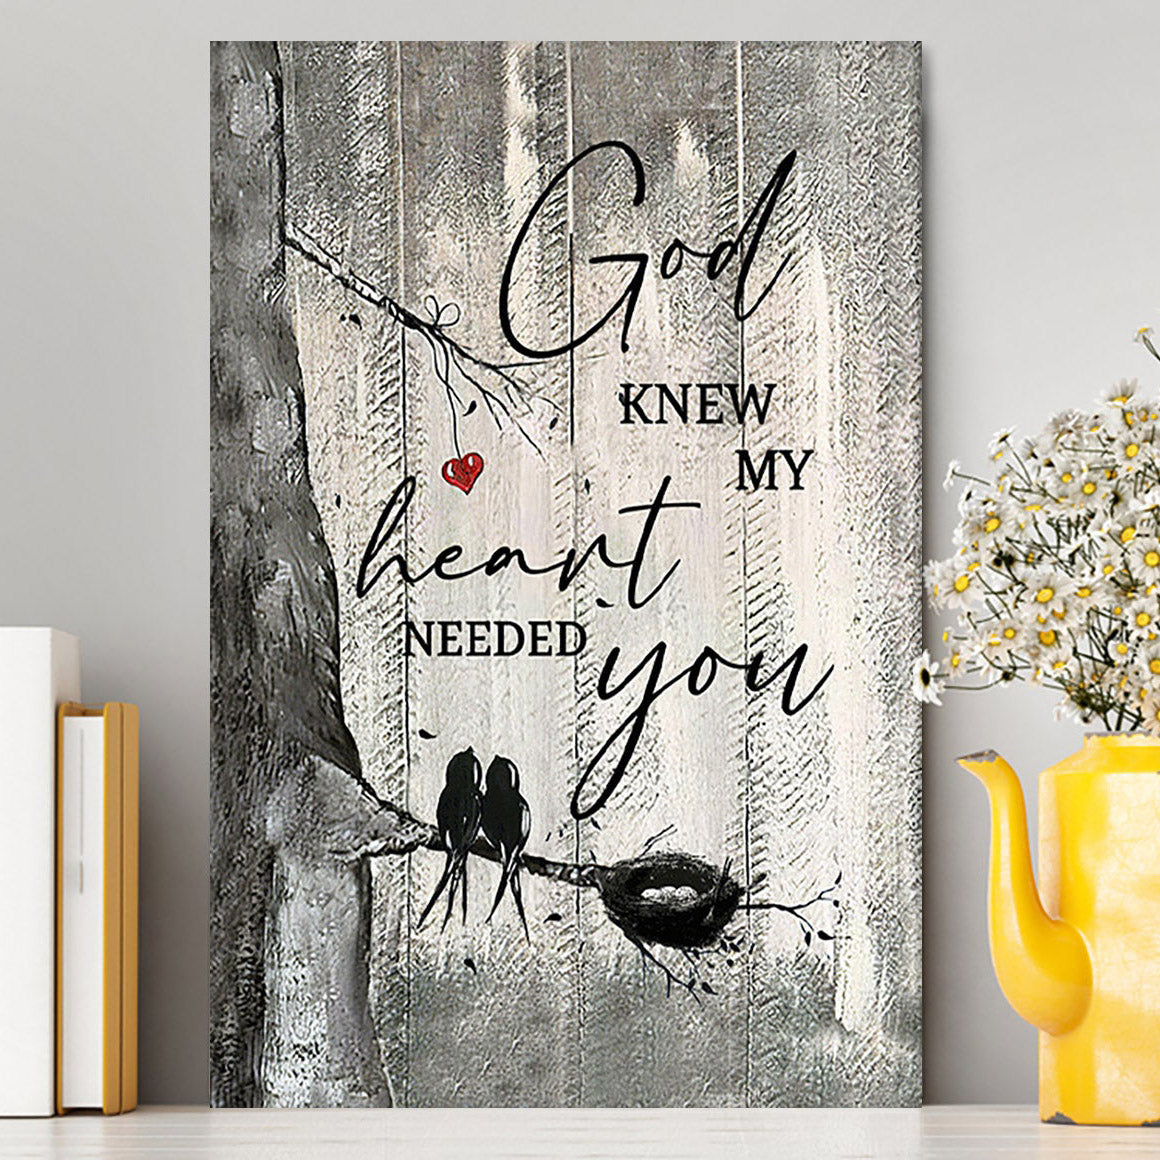 Bird God Knew My Heart Needed You Canvas Wall Art - Bible Verse Canvas Art - Inspirational Art - Christian Home Decor